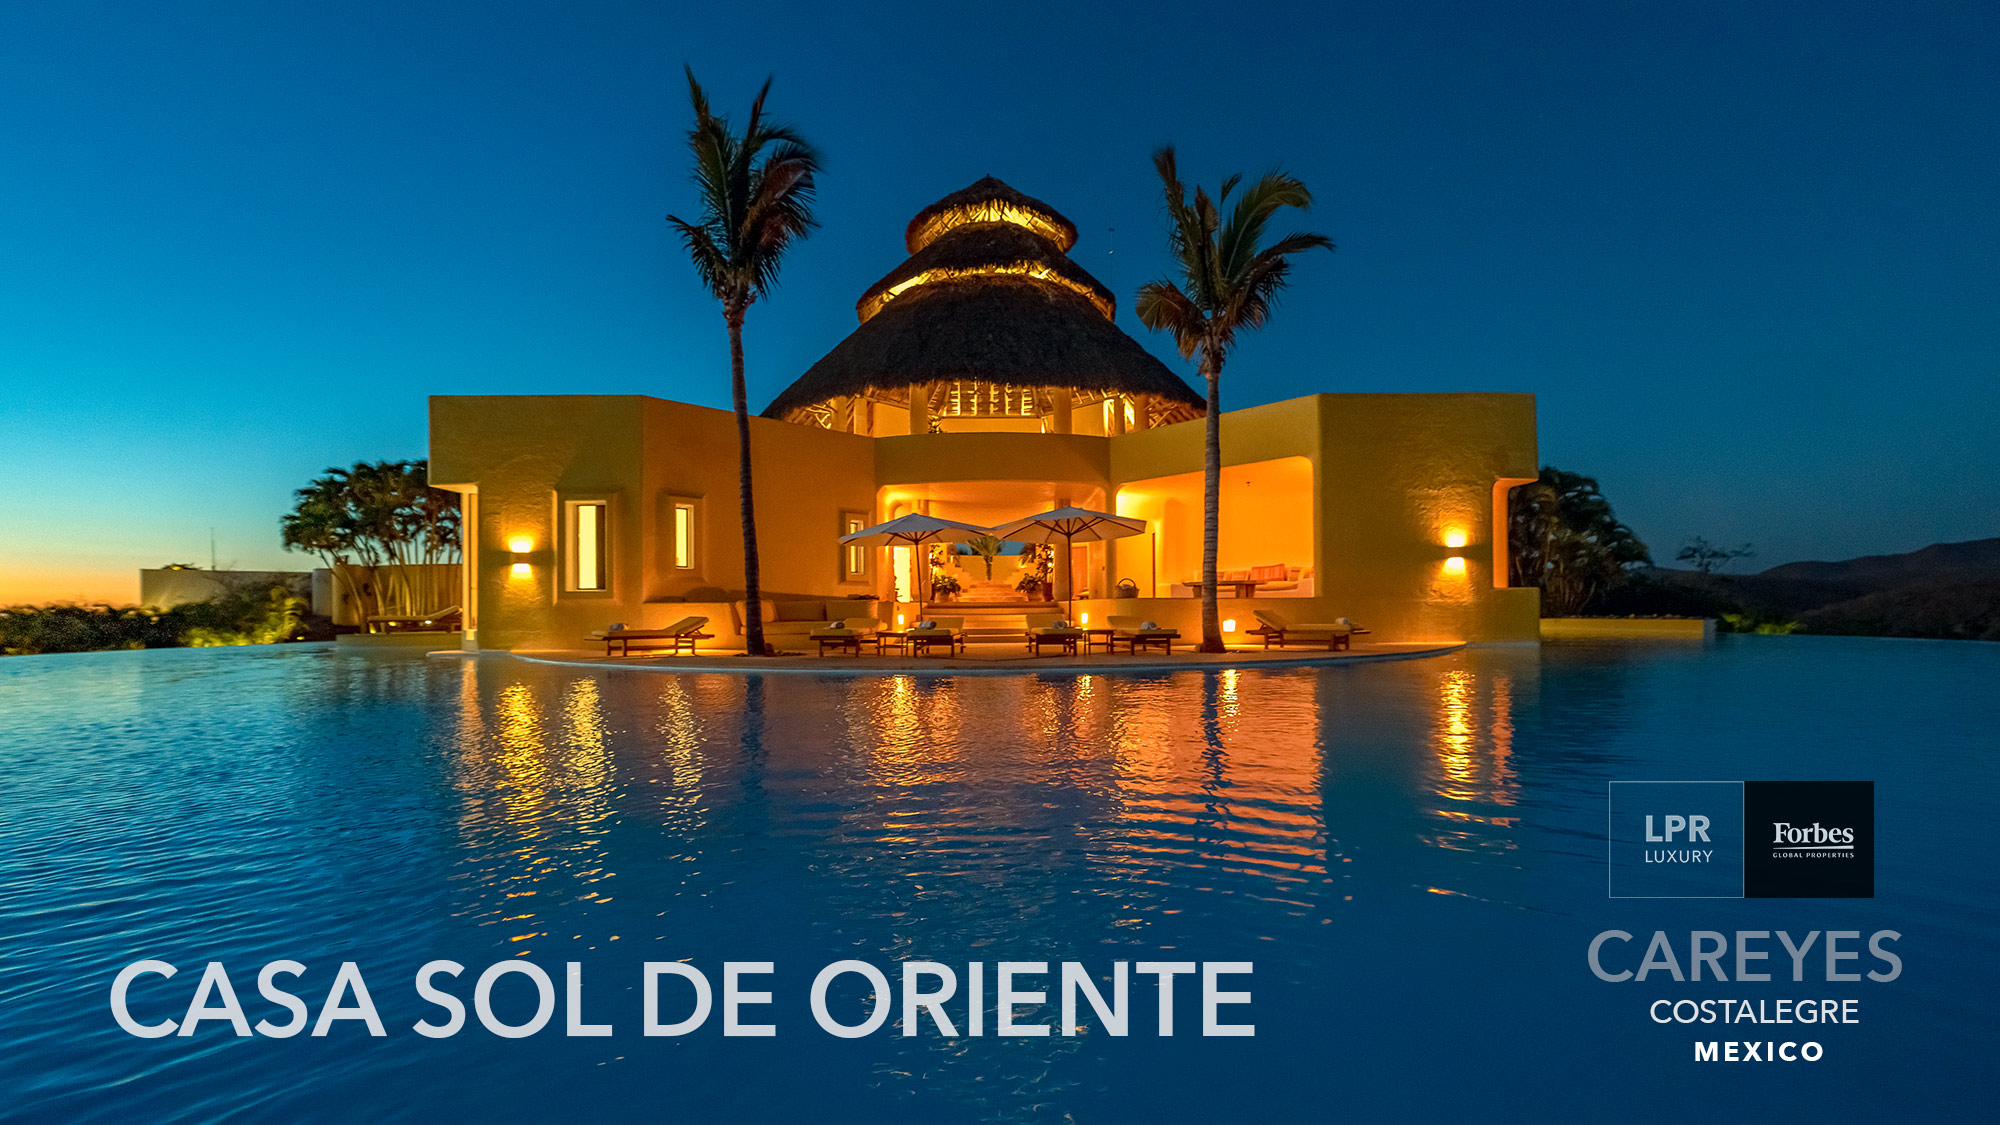 Casa Sol de Oriente - Careyes, Costalegre, Mexico - Real estate and vacation rentals -